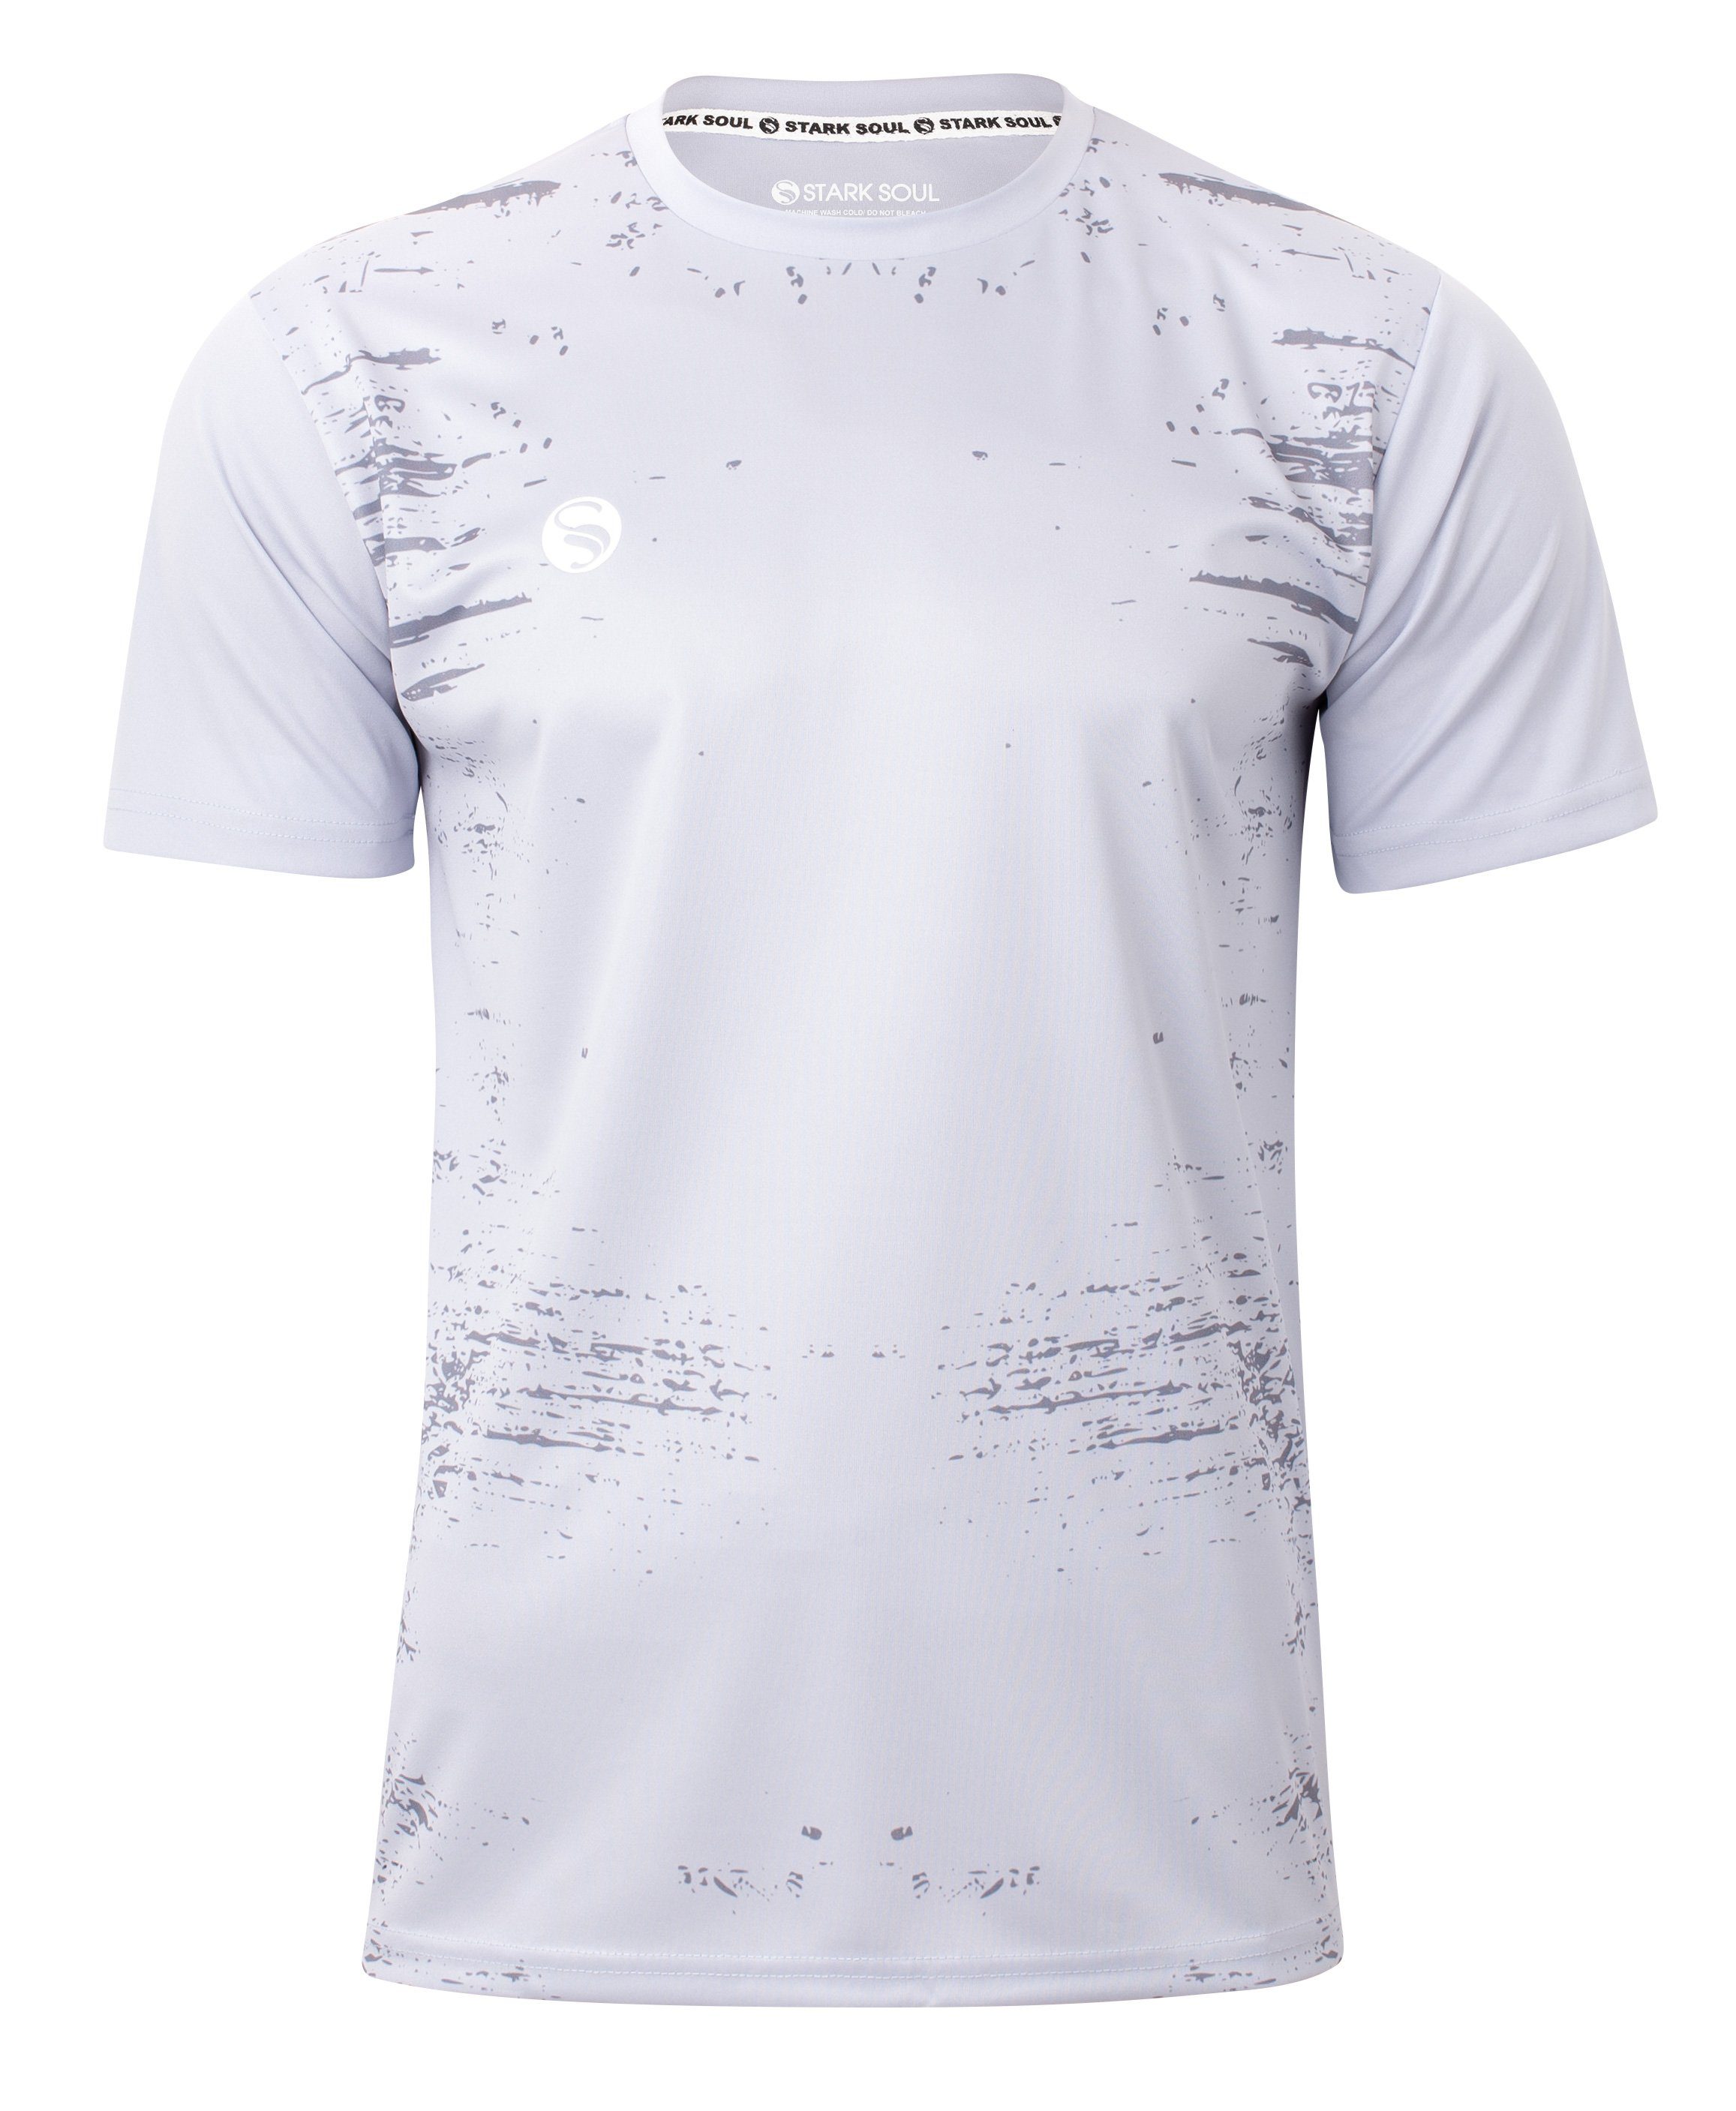 Stark Soul® T-Shirt Trainingsshirt Trikot "Stained"- T-Shirt, Herren Sport-Shirt, Kurzarm Grau